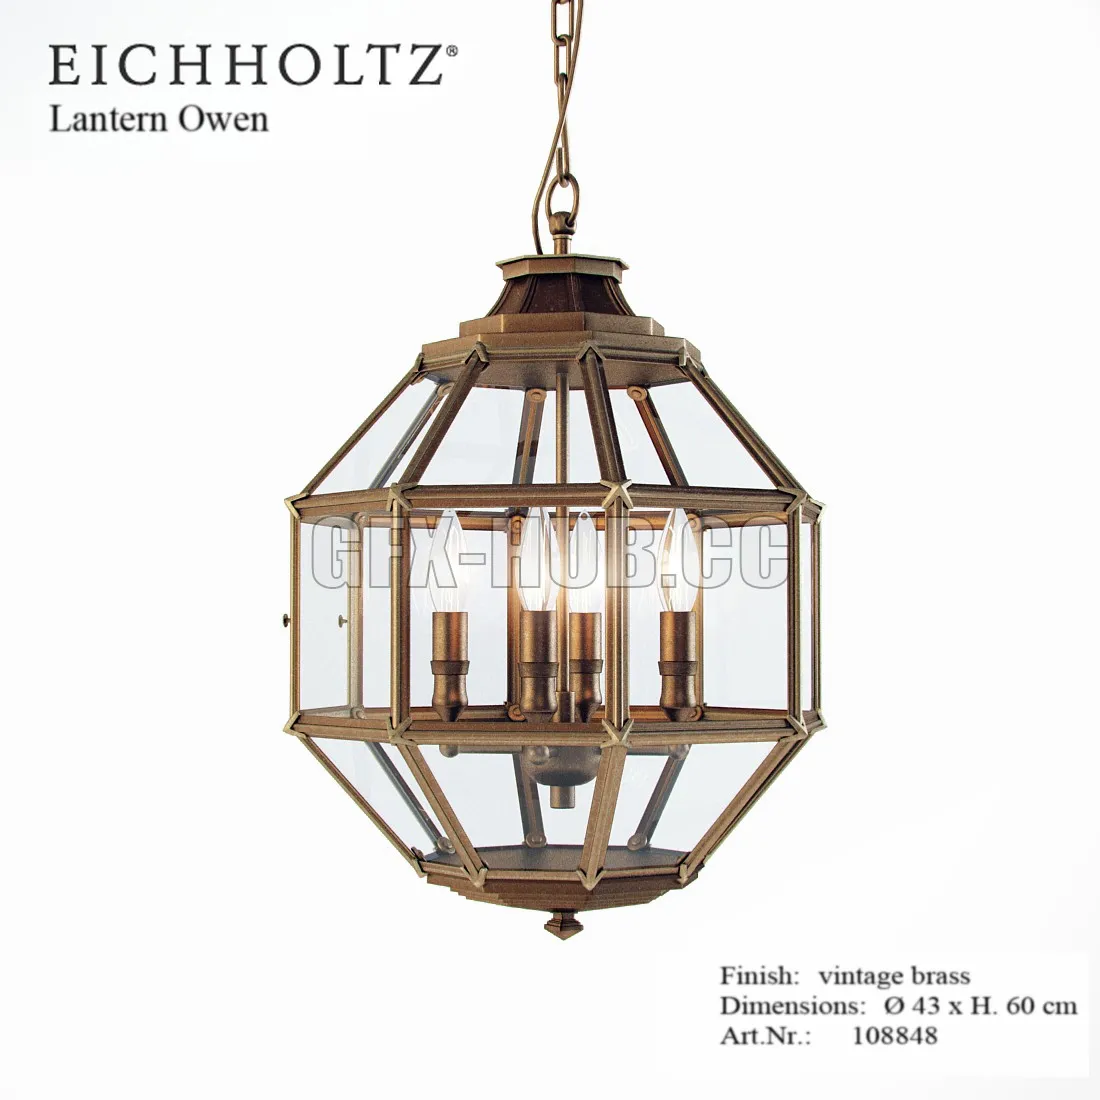 Eichholtz Lantern Owen – 213479